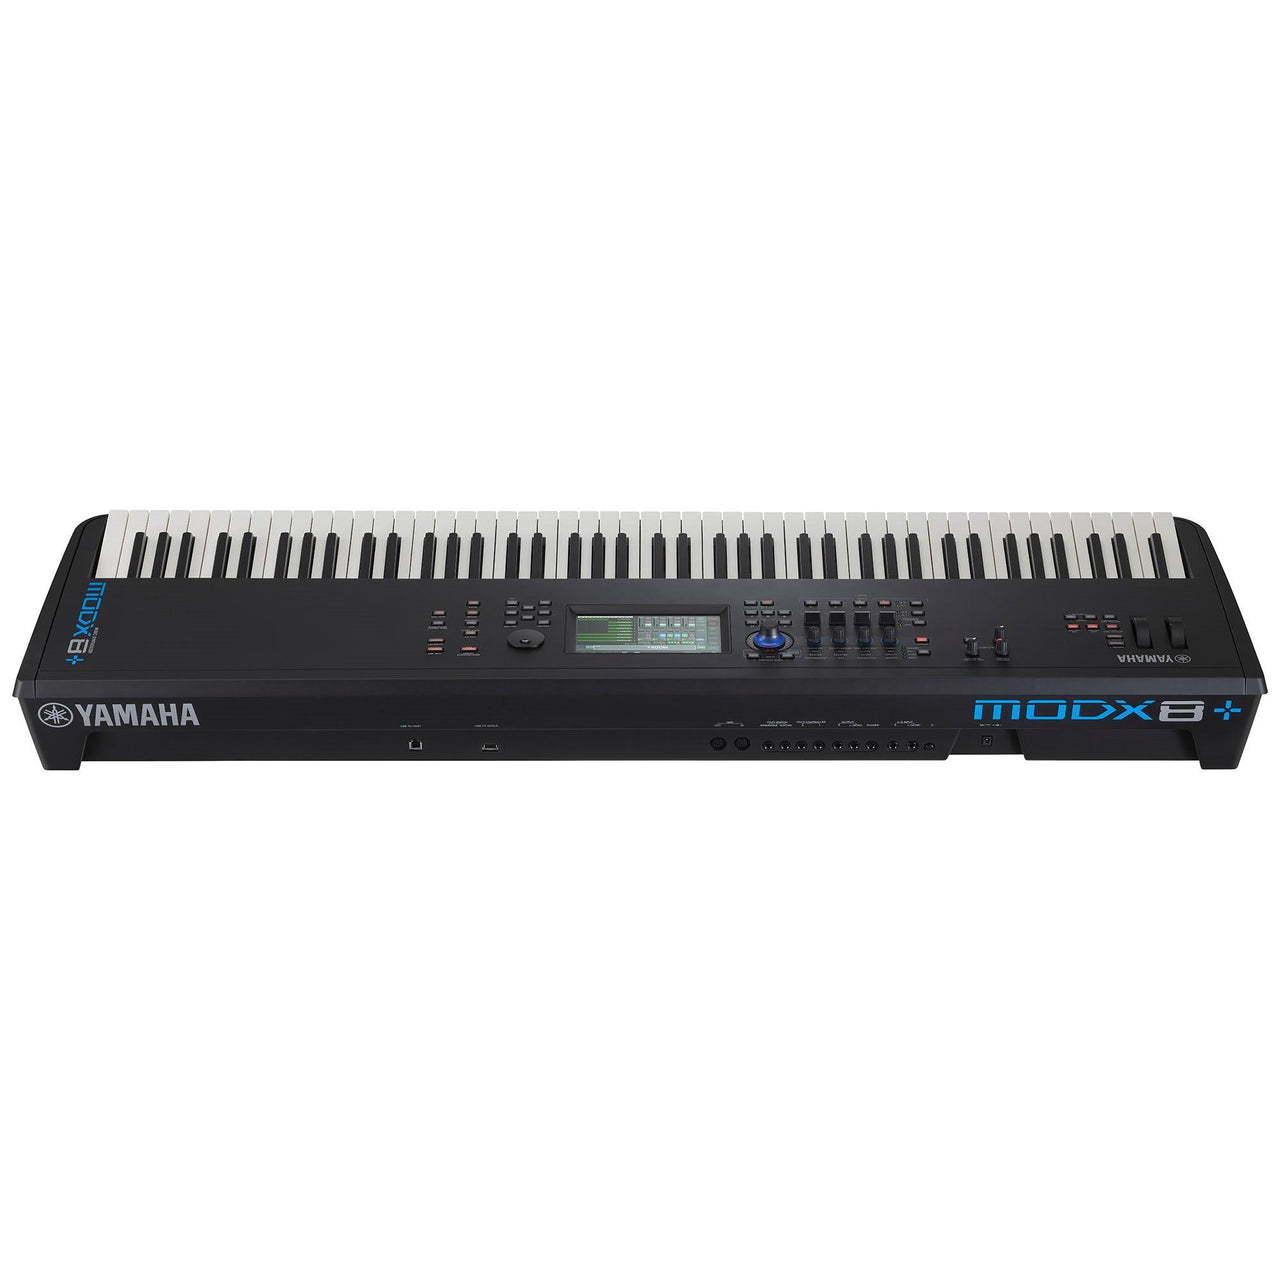 Sintetizador Yamaha Modx8+ De Produccion 88 Teclas